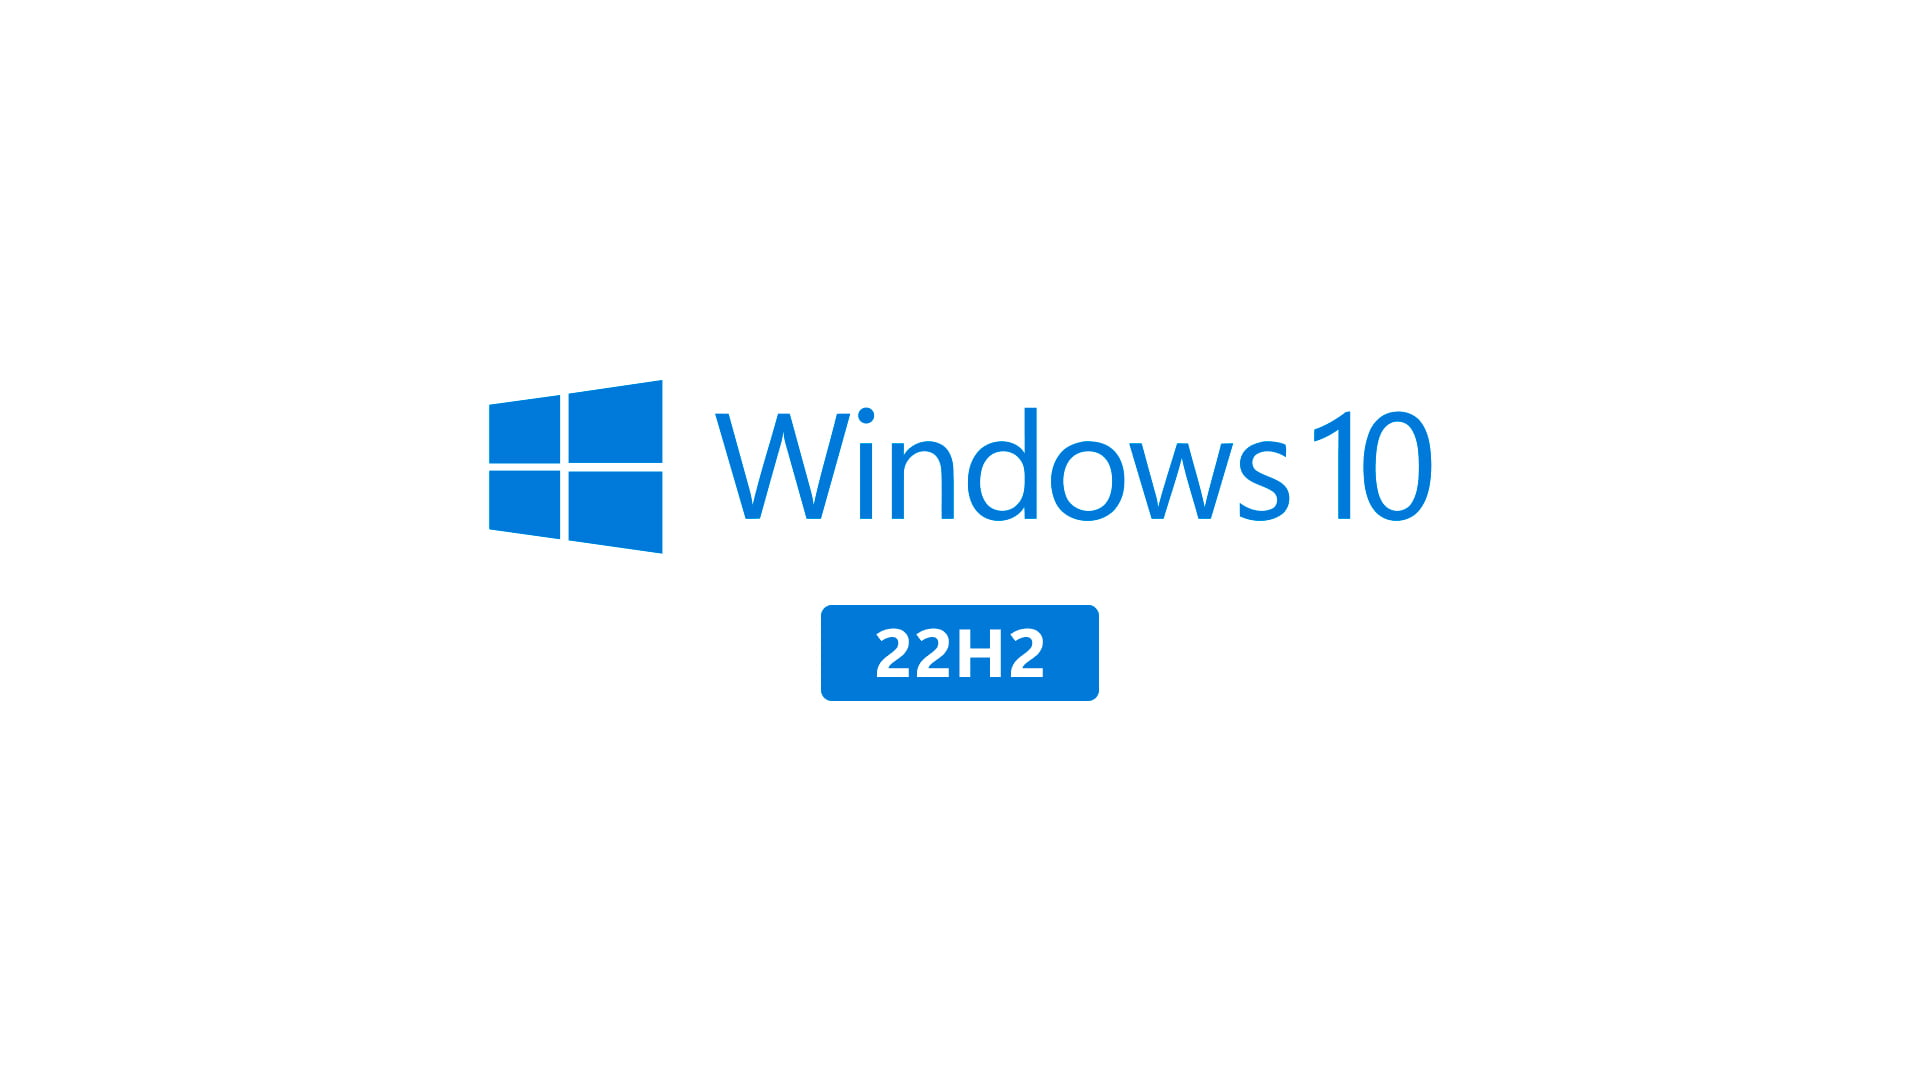 10 ноябрь 2017. Виндовс 10 21h2. Windows 10, версия 22h2. Обновление Windows 10 22h2. Windows 11.